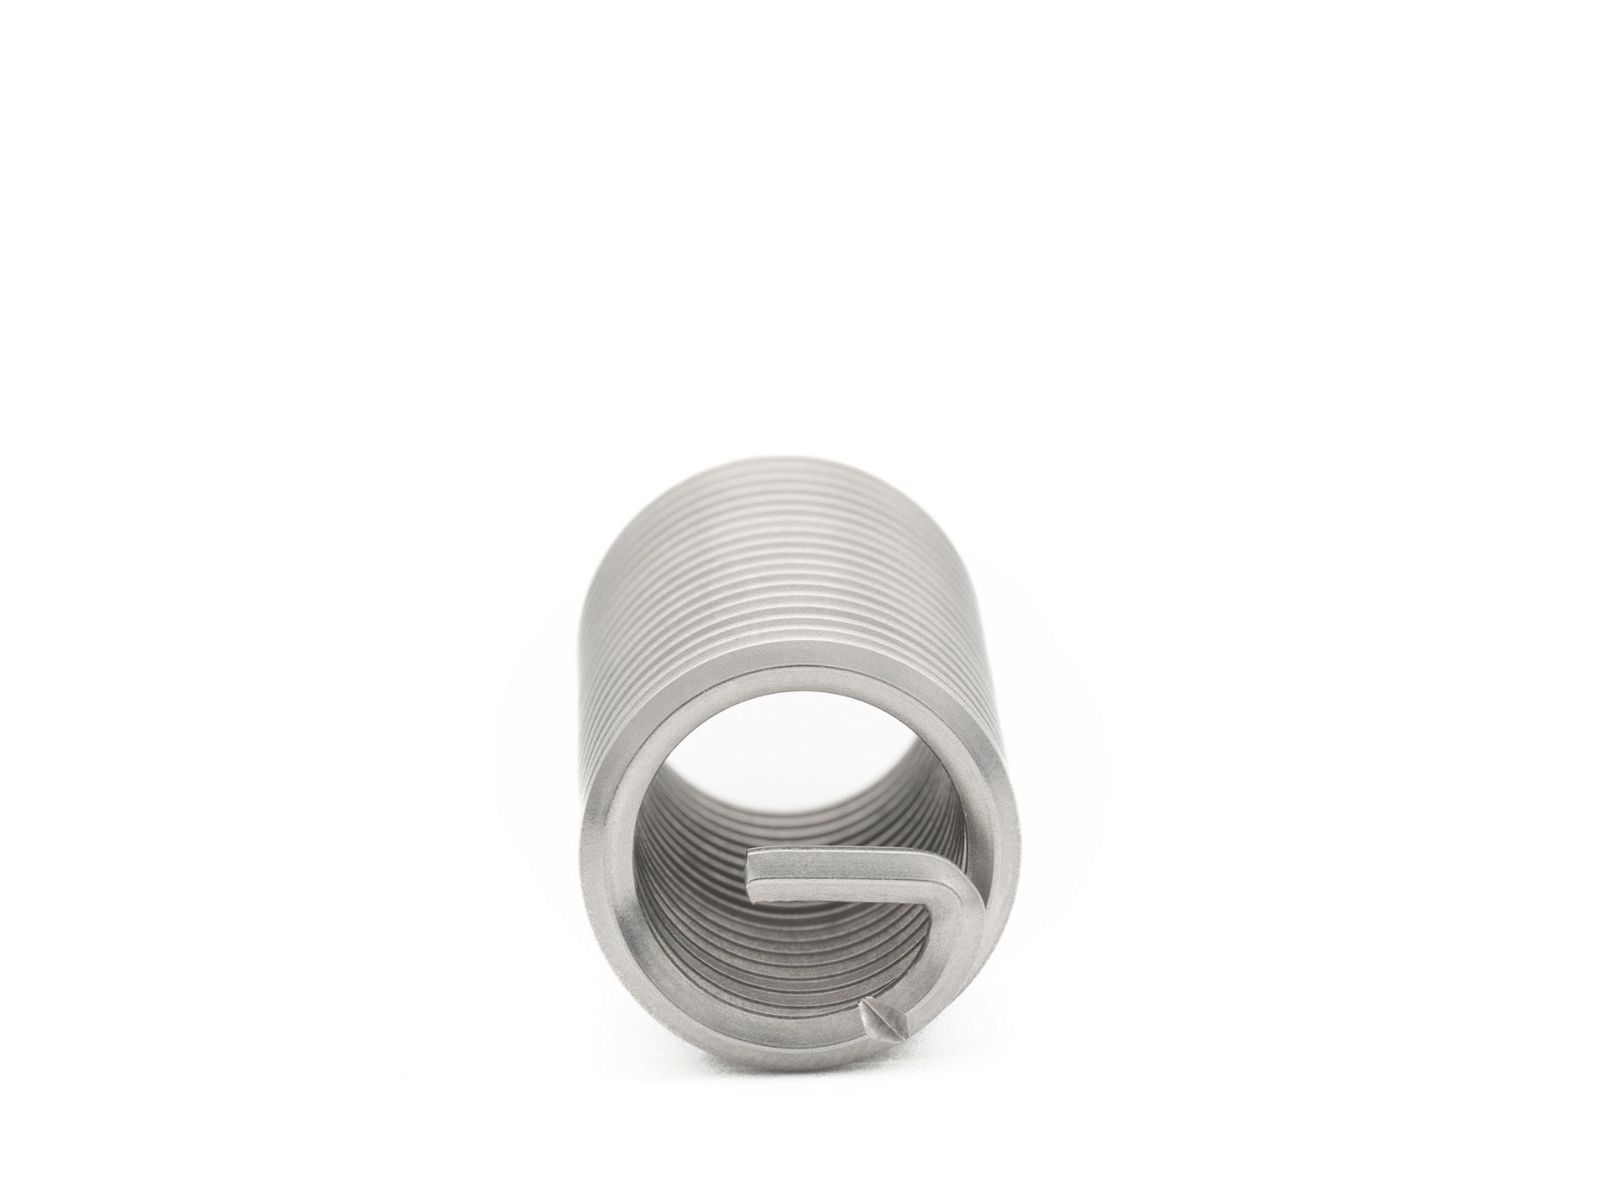 BaerCoil Wire Thread Inserts BSF 1/2 x 16 - 3.0 D (38.1 mm) - free running - 100 pcs.